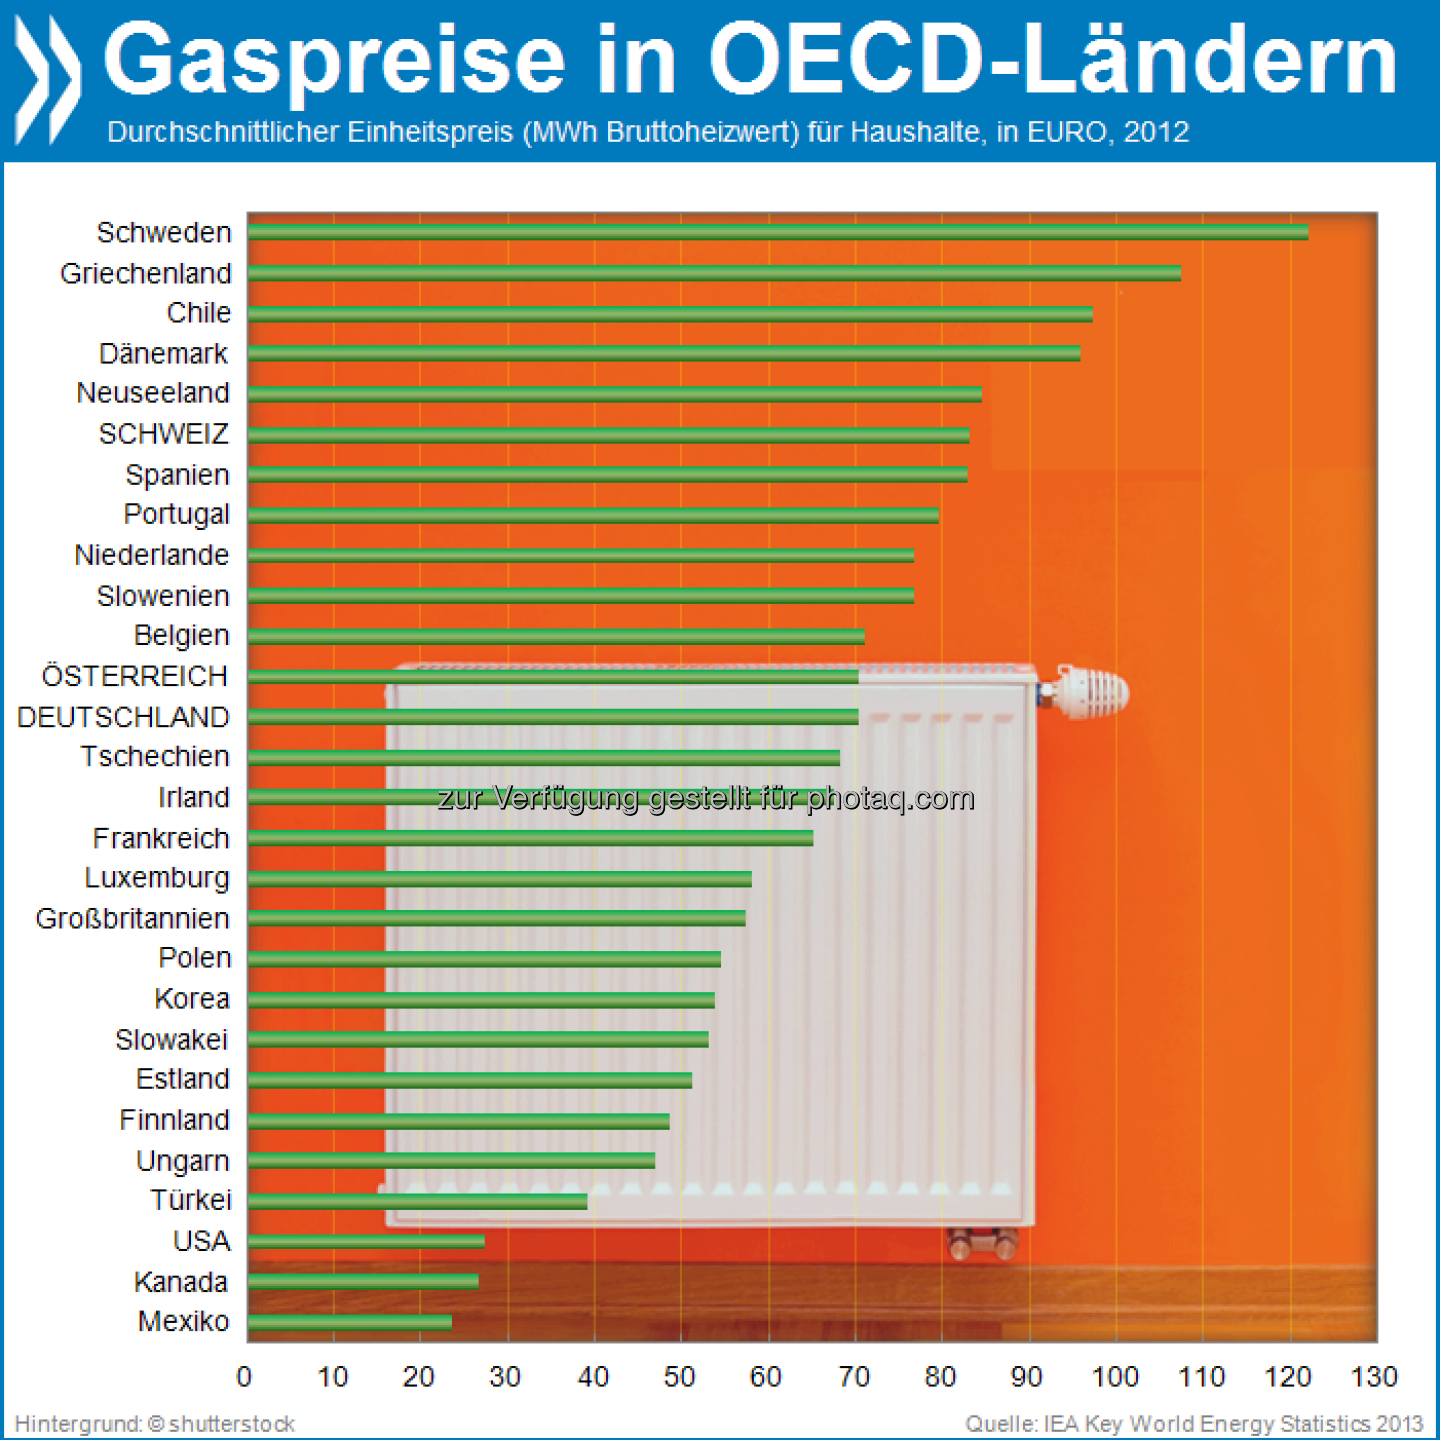 Heizung schon an? Am niedrigsten sind die Gaspreise in der OECD in Mexiko, Kanada und den USA. Griechen und Schweden müssen für warme Füße etwa fünf Mal so viel hinblättern.

Mehr Daten unter: http://bit.ly/1h7NyUC